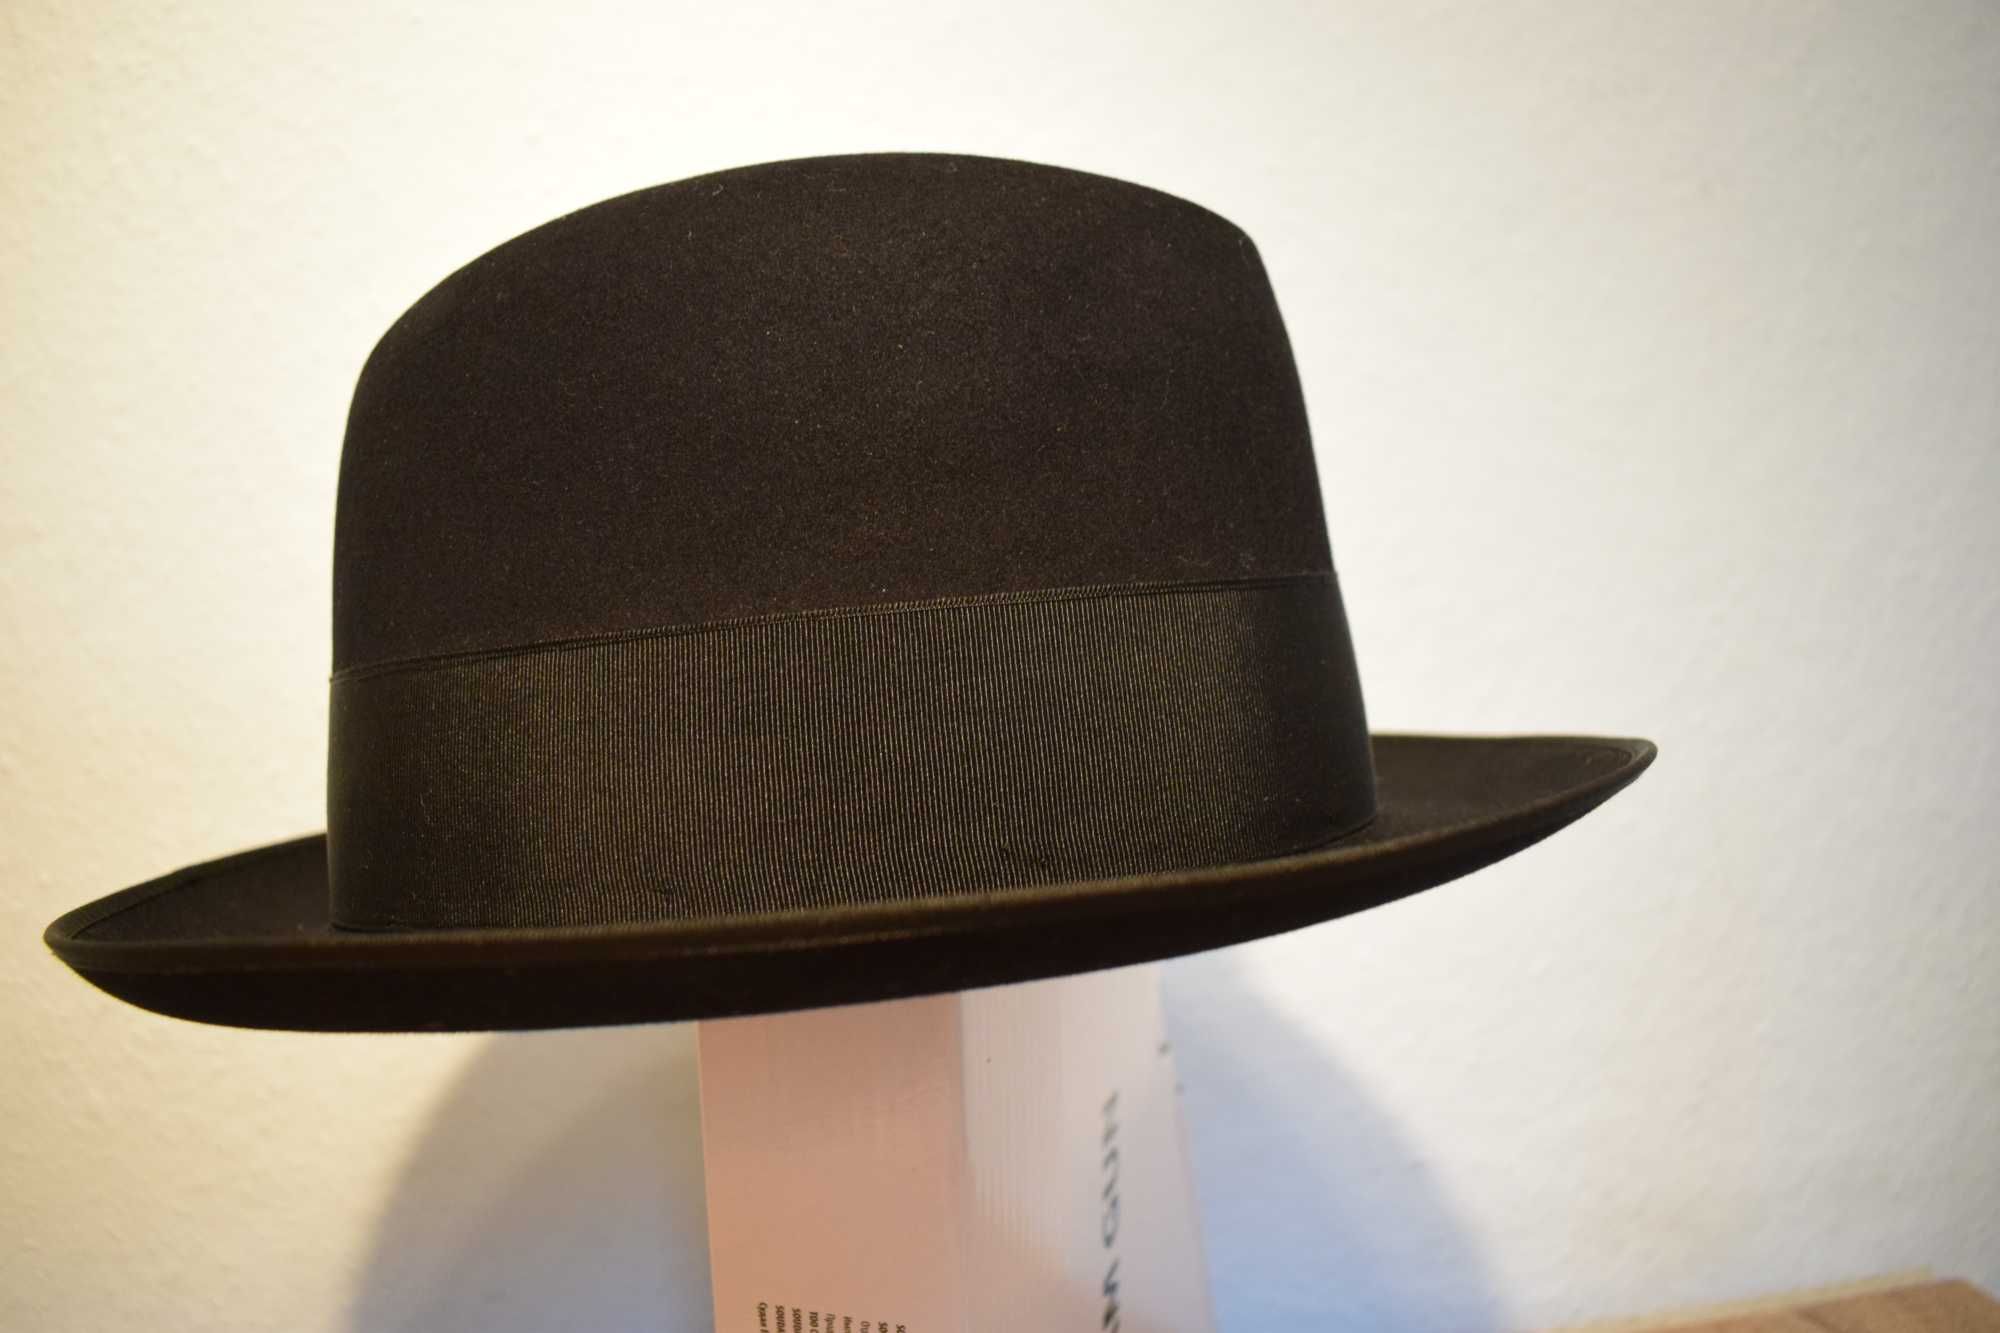 Markowy kapelusz firmy Mayser - stan nieużywany .